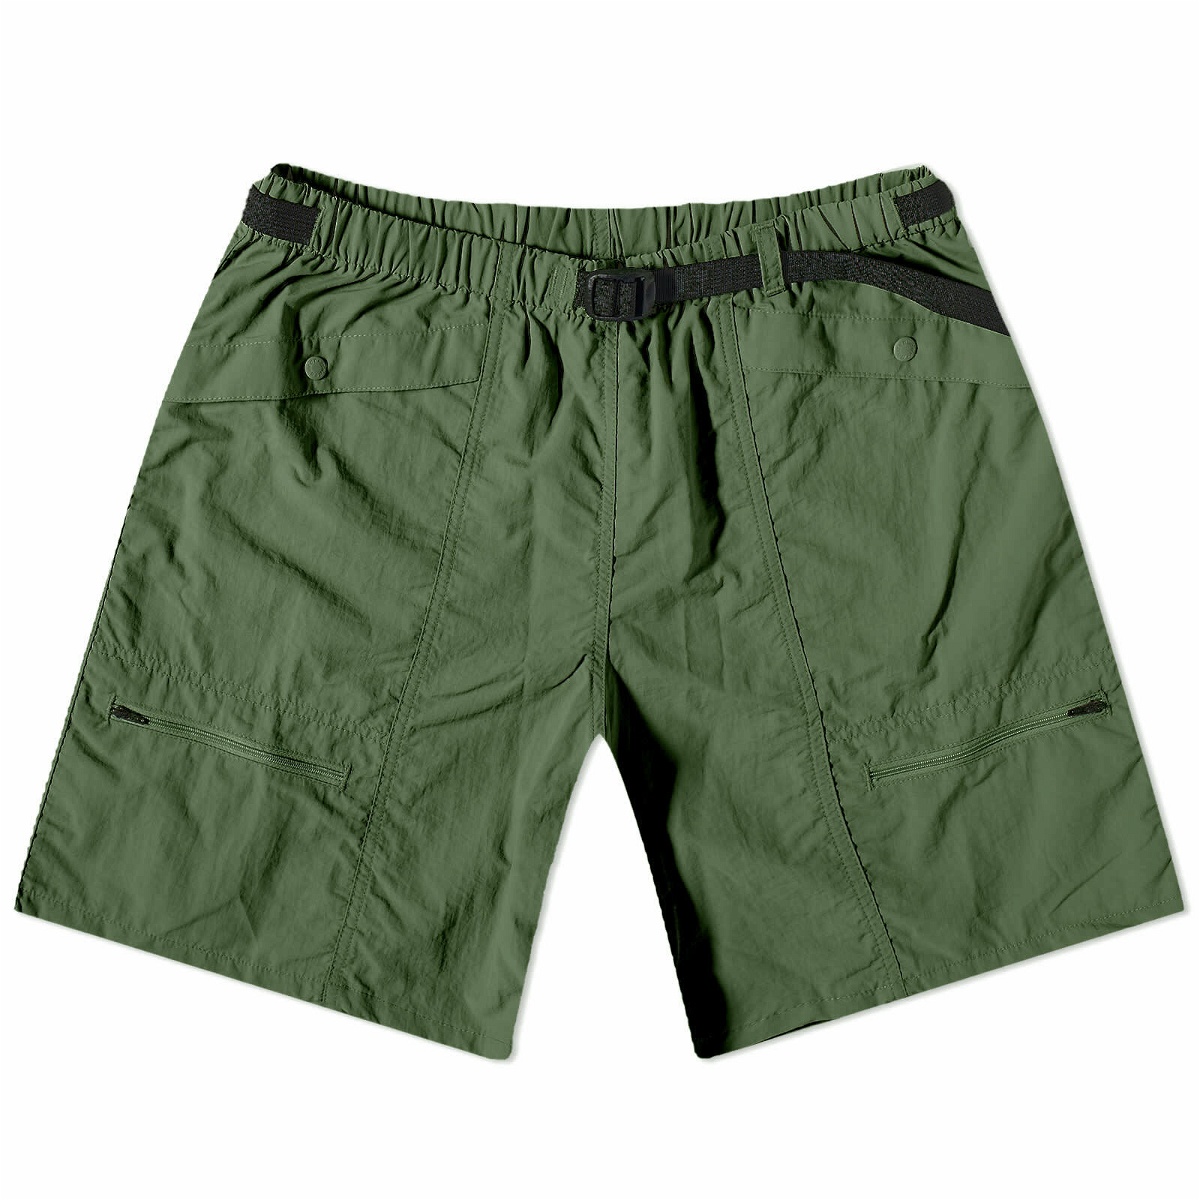 Battenwear Men's Camp Short in Green Battenwear